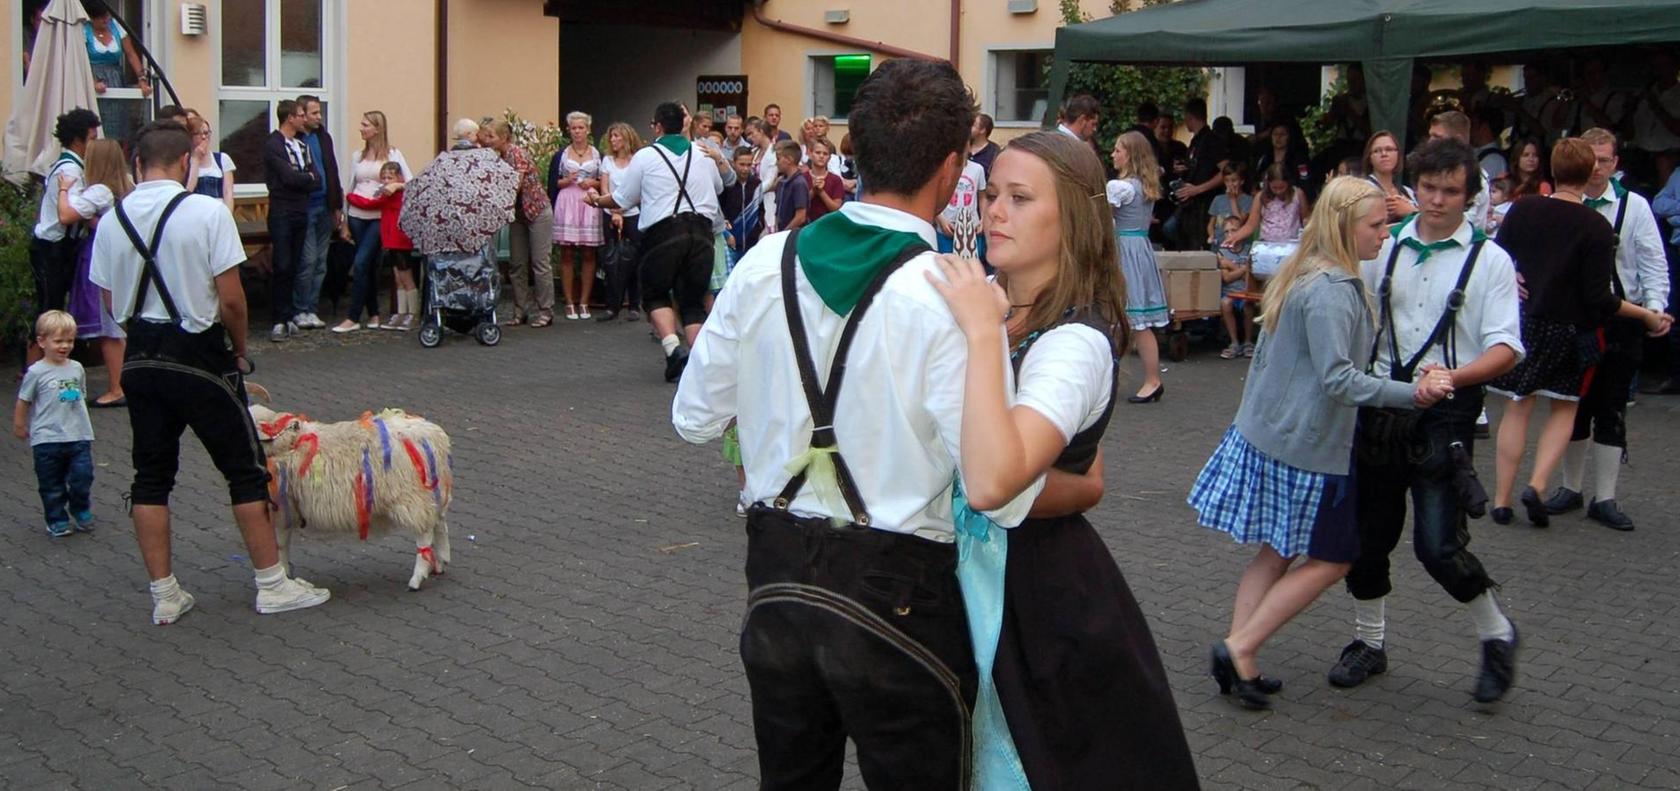 Leerstetten feierte vier Tage lang traditionelle Kirchweih